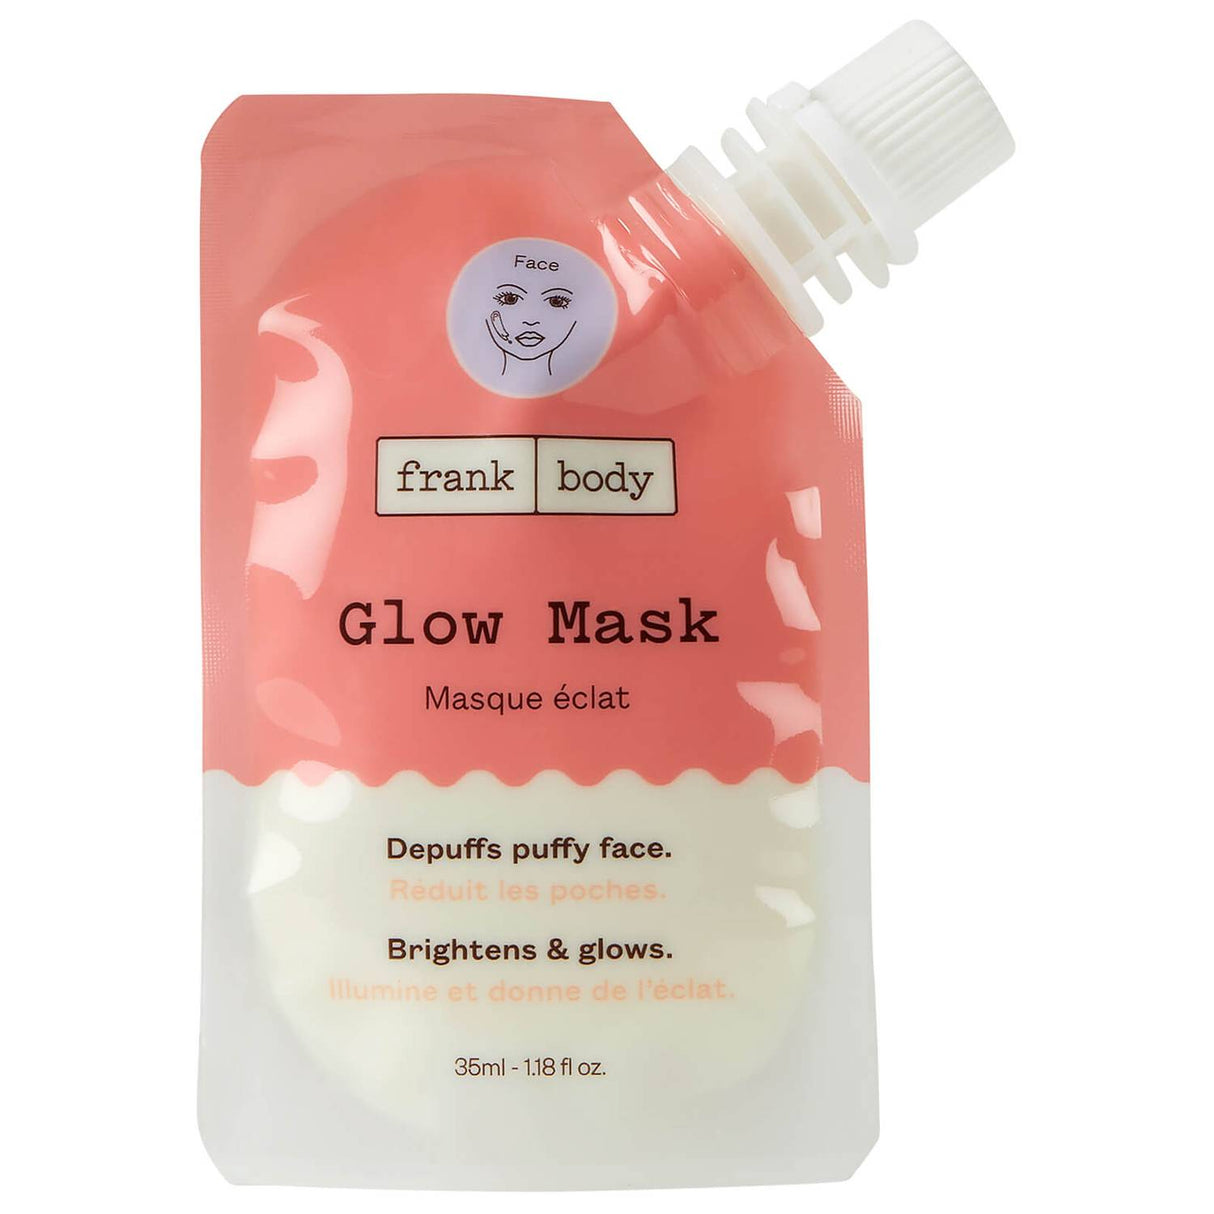 Frank Body Glow Mask Pouch (1.18 oz.)